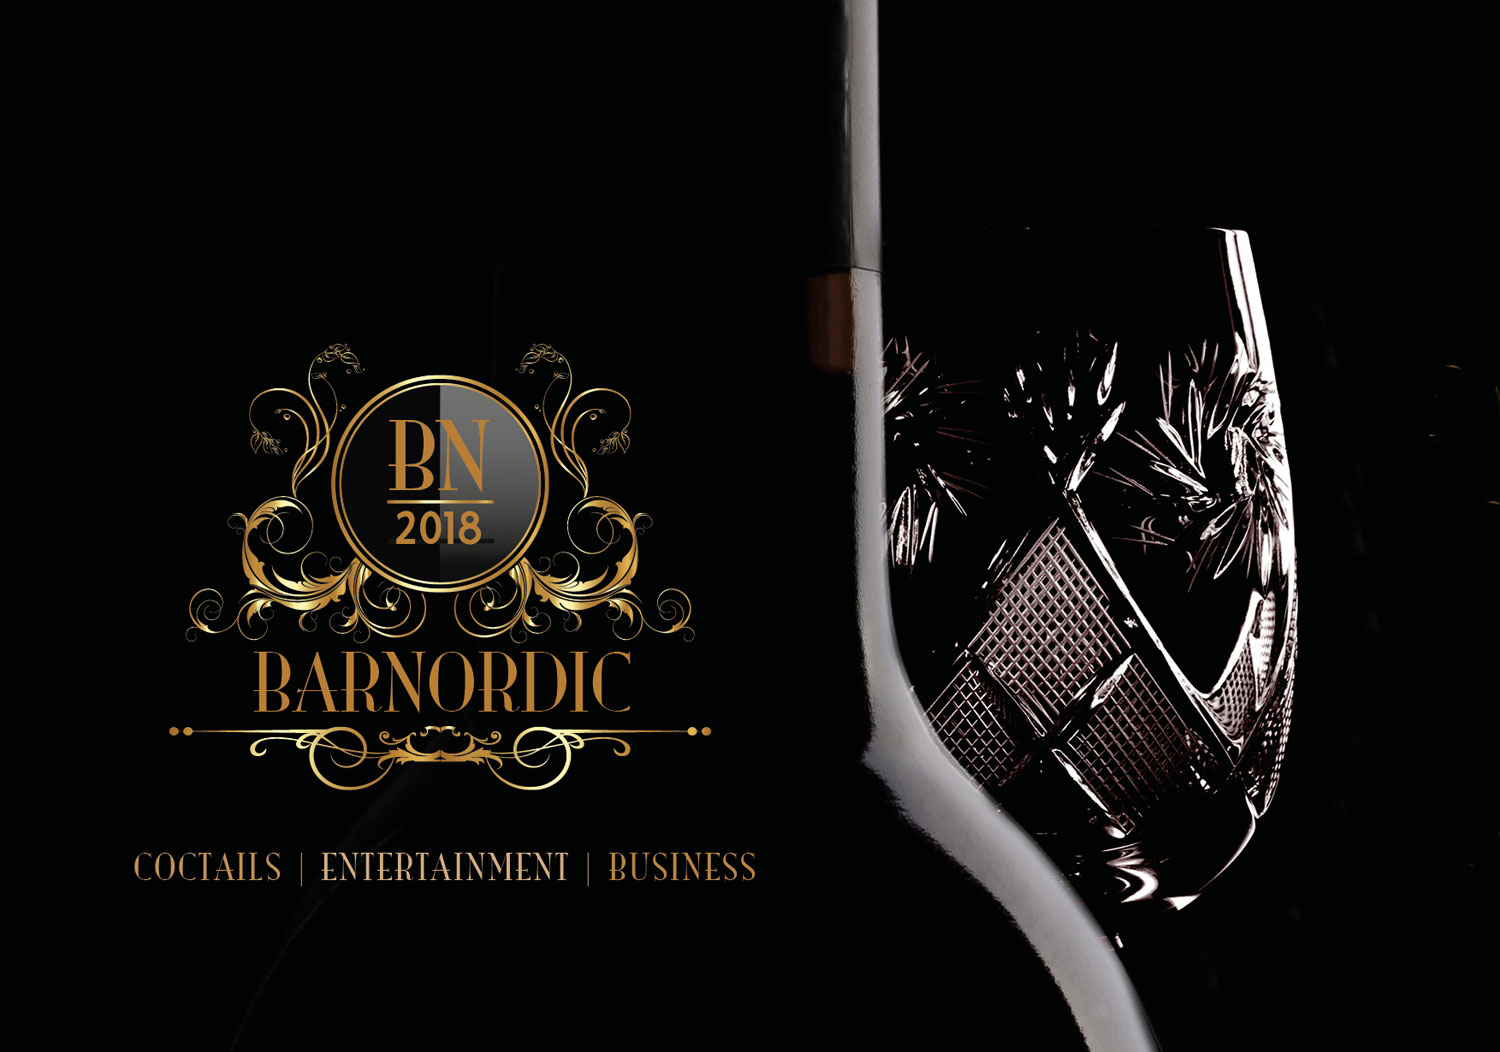 BarNordic 2018